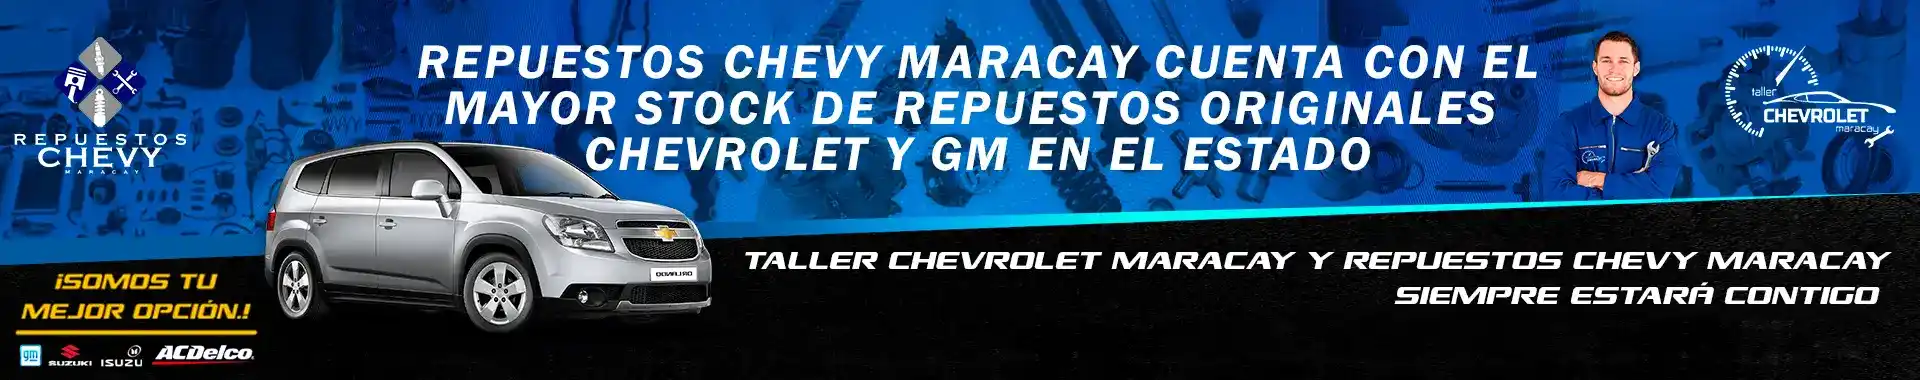 Imagen 3 del perfil de Repuestos Chevy Maracay